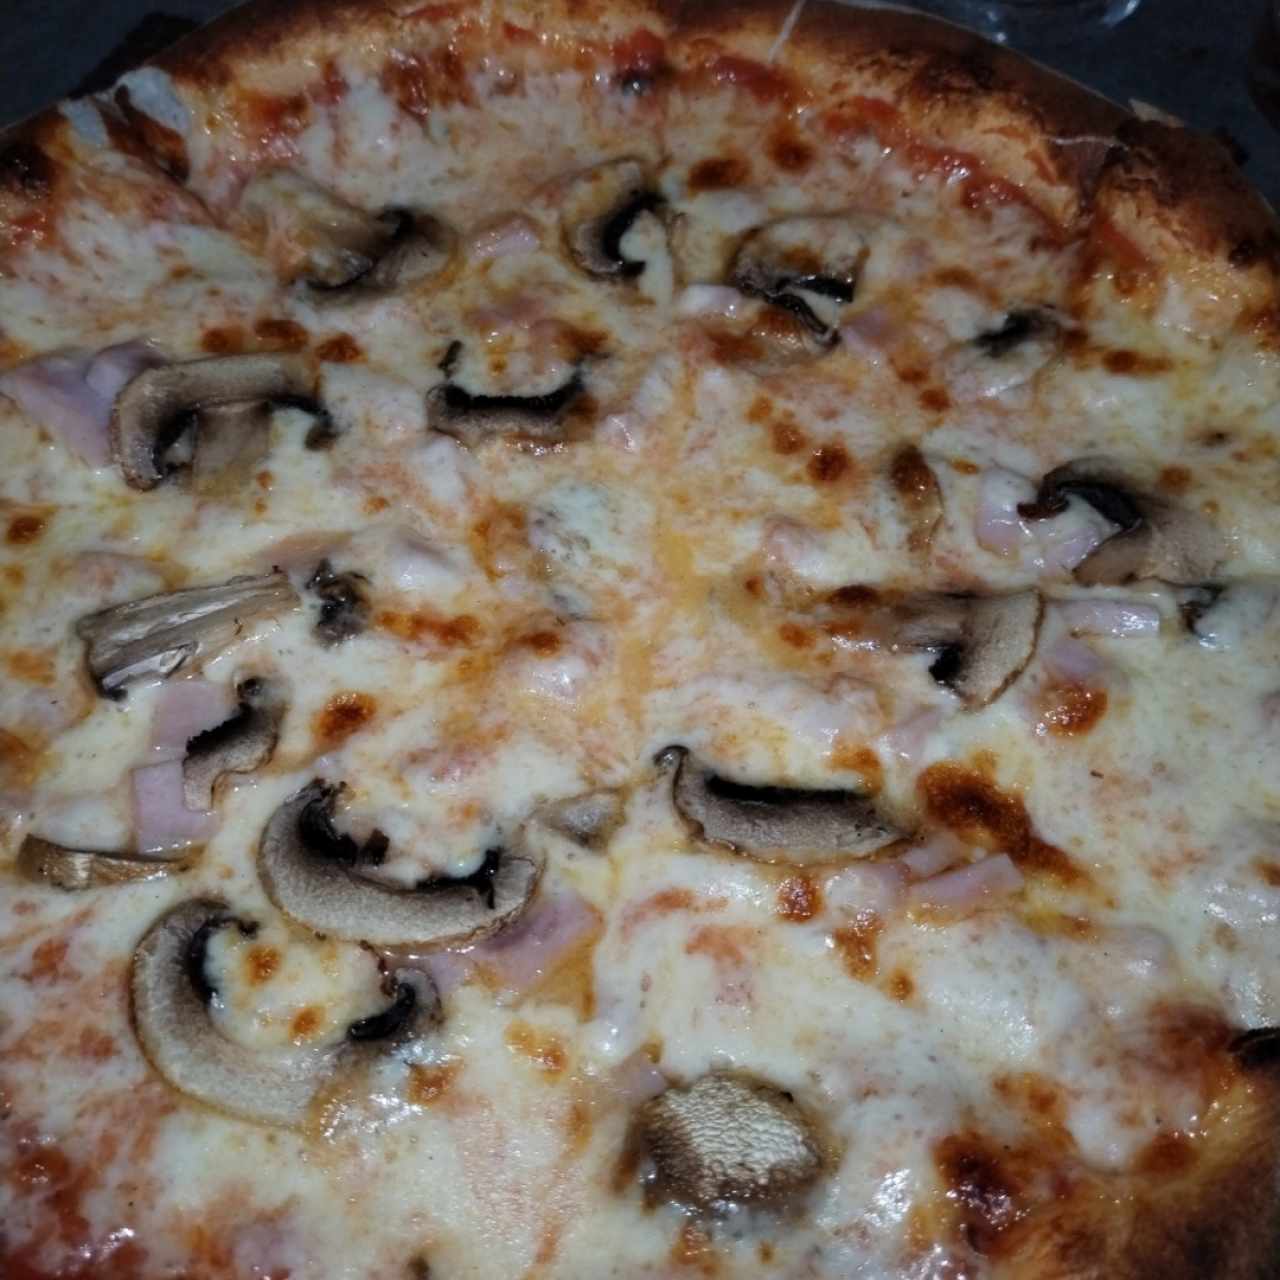 Pizzas - Prosciutto e Funghi